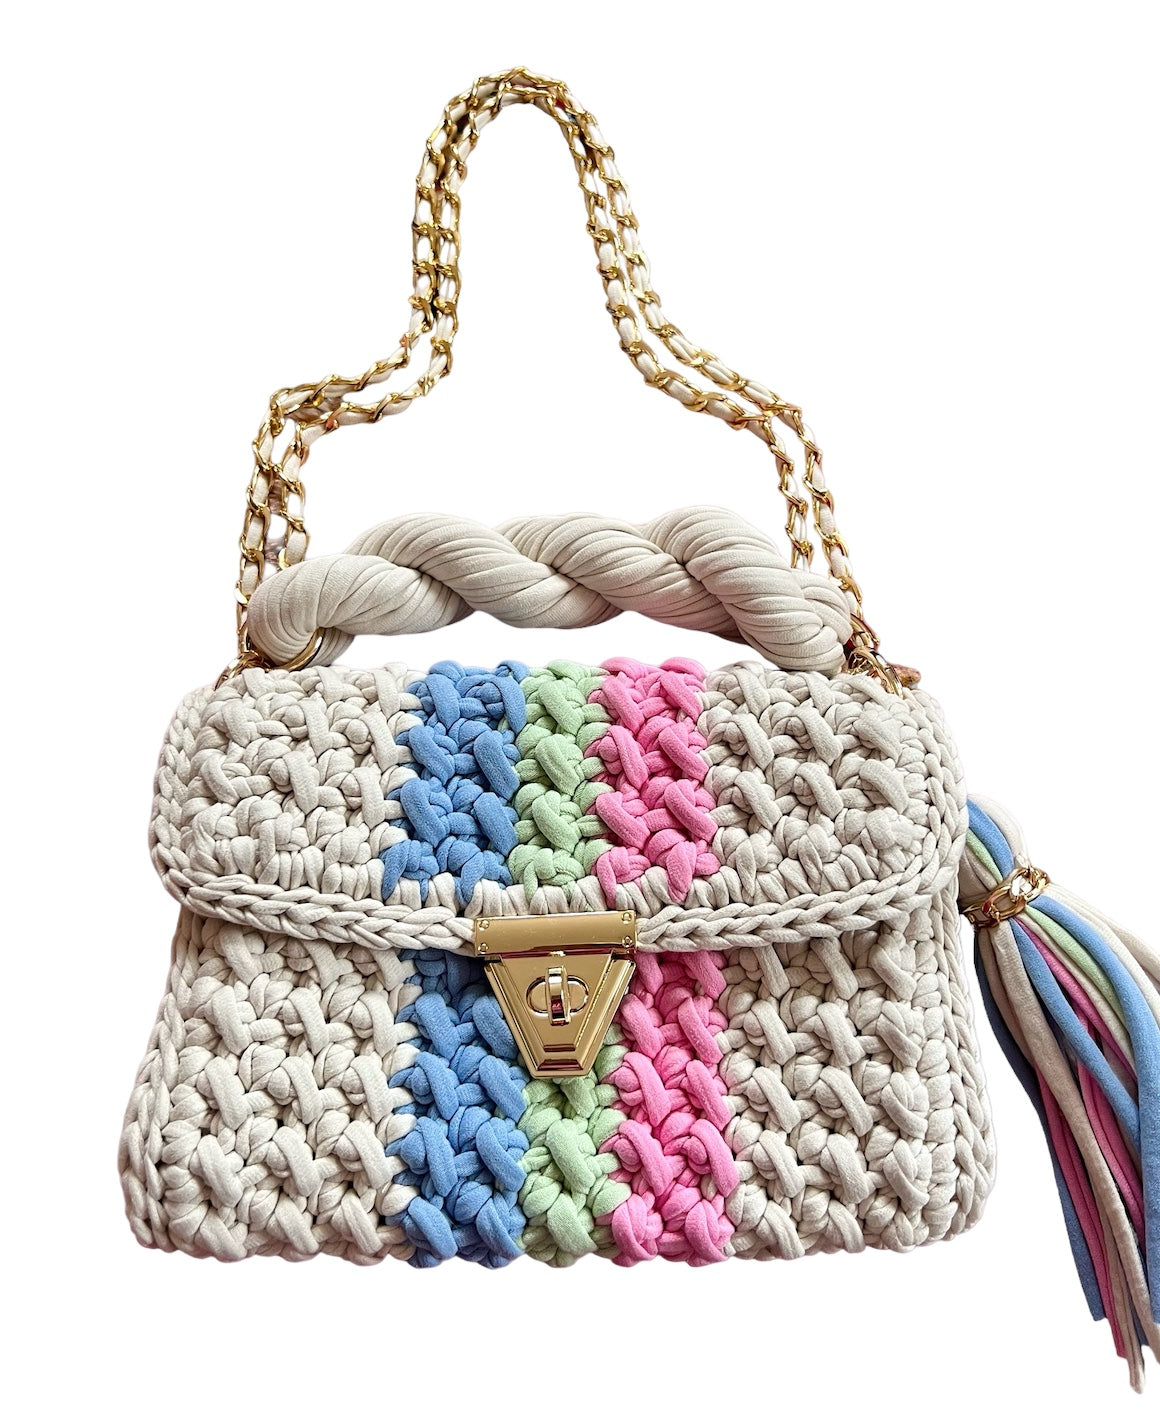 Archiella Knitted Handbag Amalfi Gold